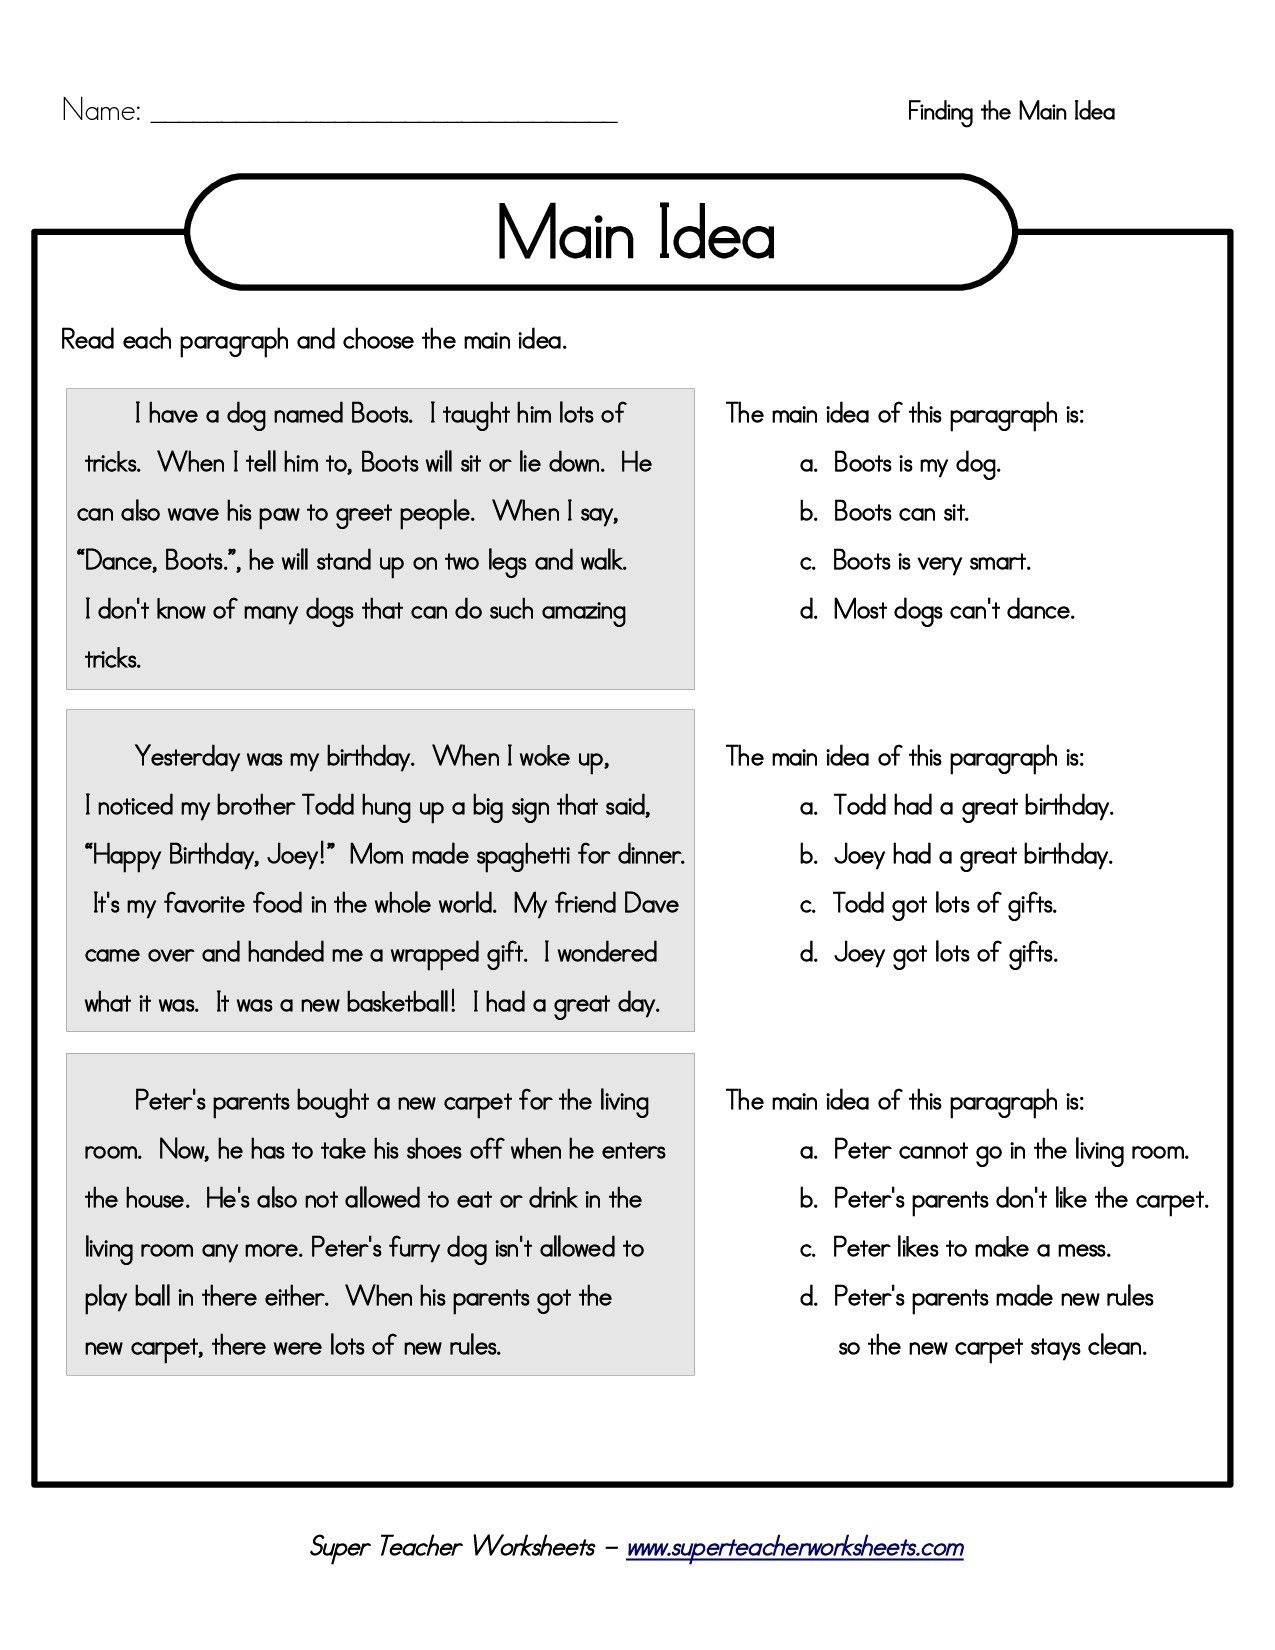 Printable 5Th Grade Main Idea Worksheets | My Classroom | Main Idea - Free Printable Summarizing Worksheets 4Th Grade